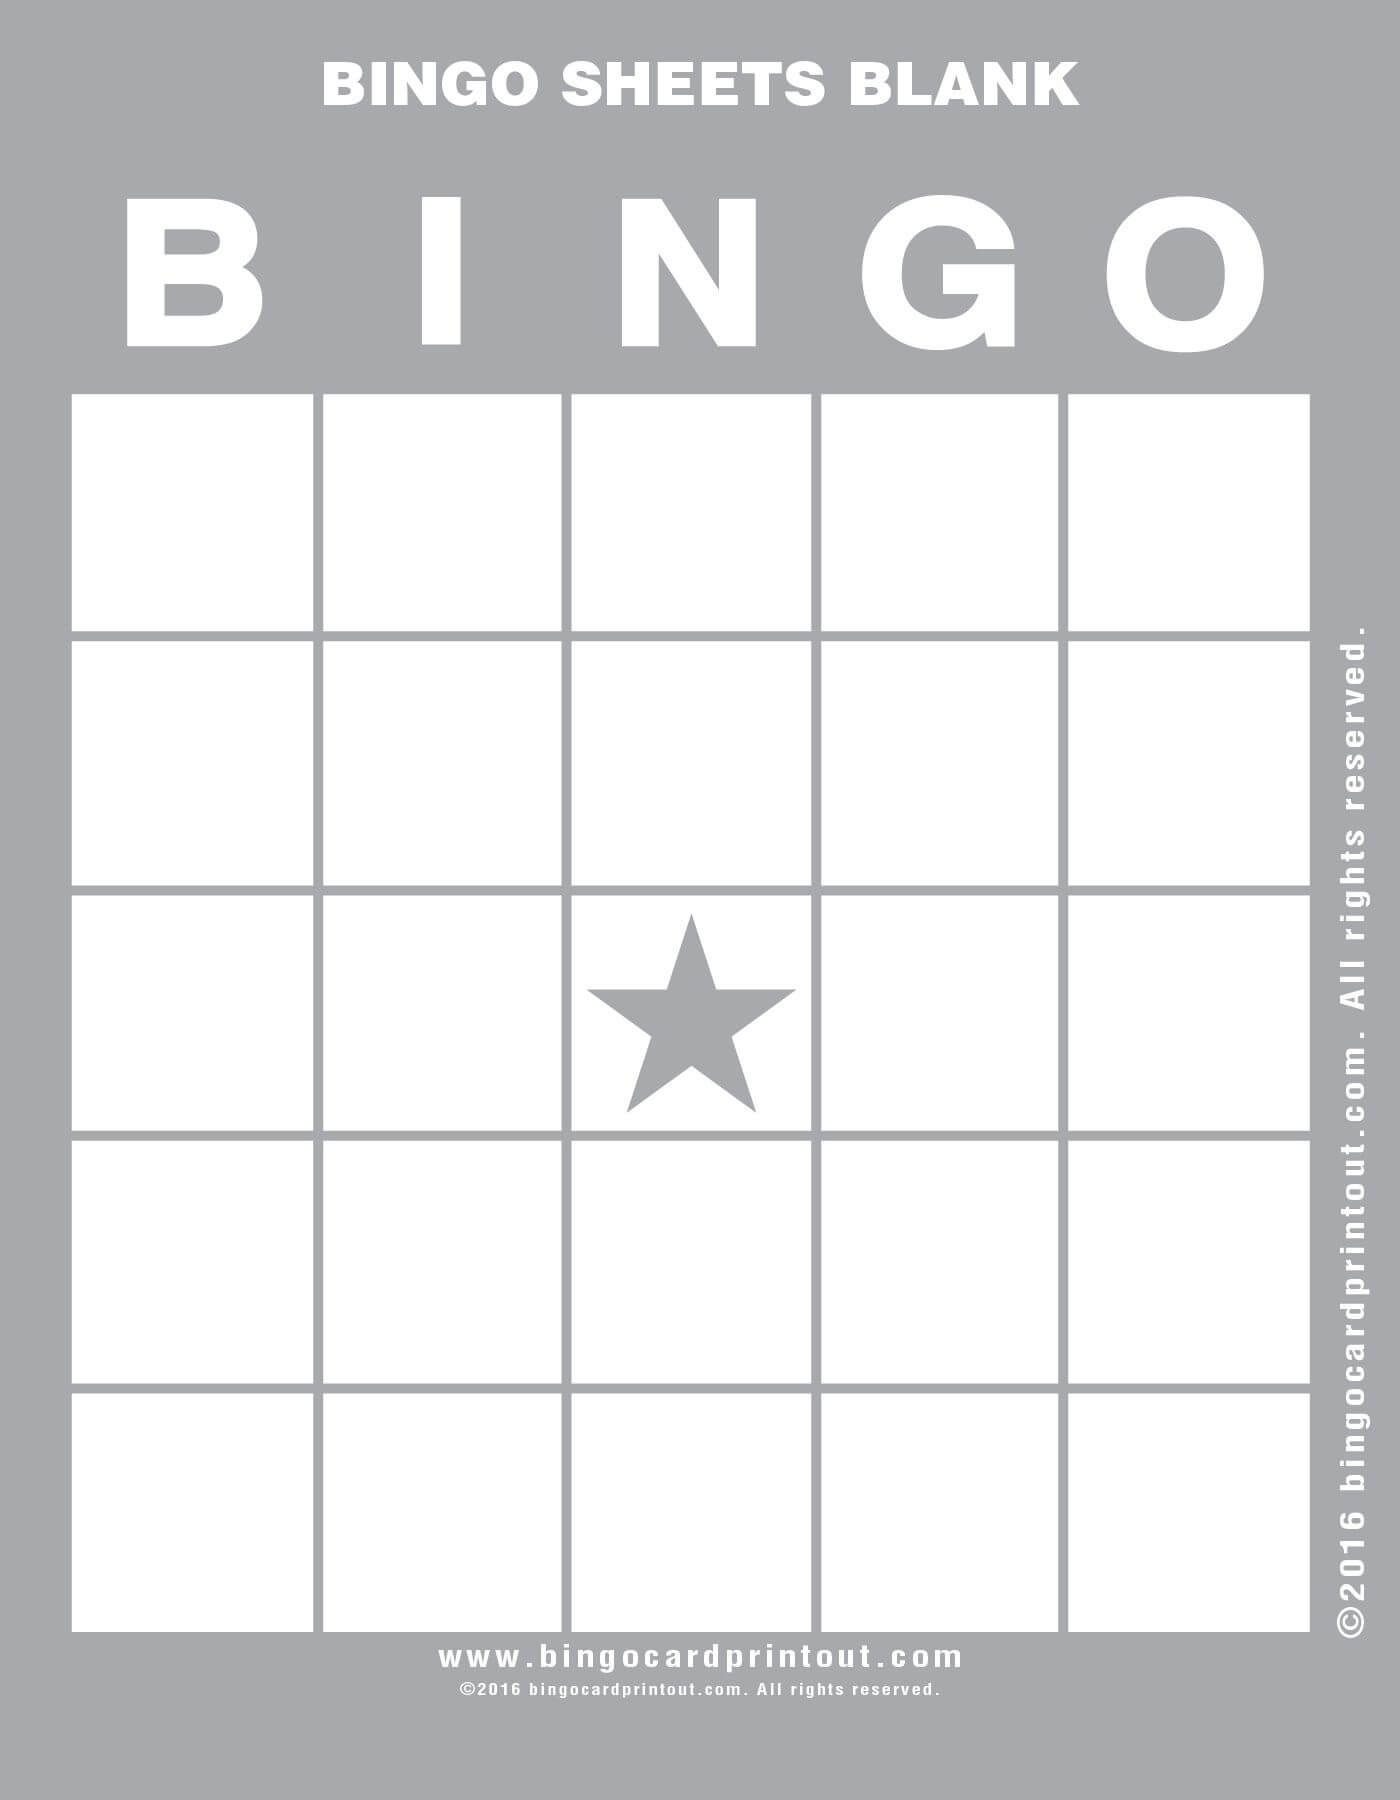 Bingo Sheets Blank 9 | Bingo Sheets Blank In 2019 | Bingo Pertaining To Blank Bingo Template Pdf